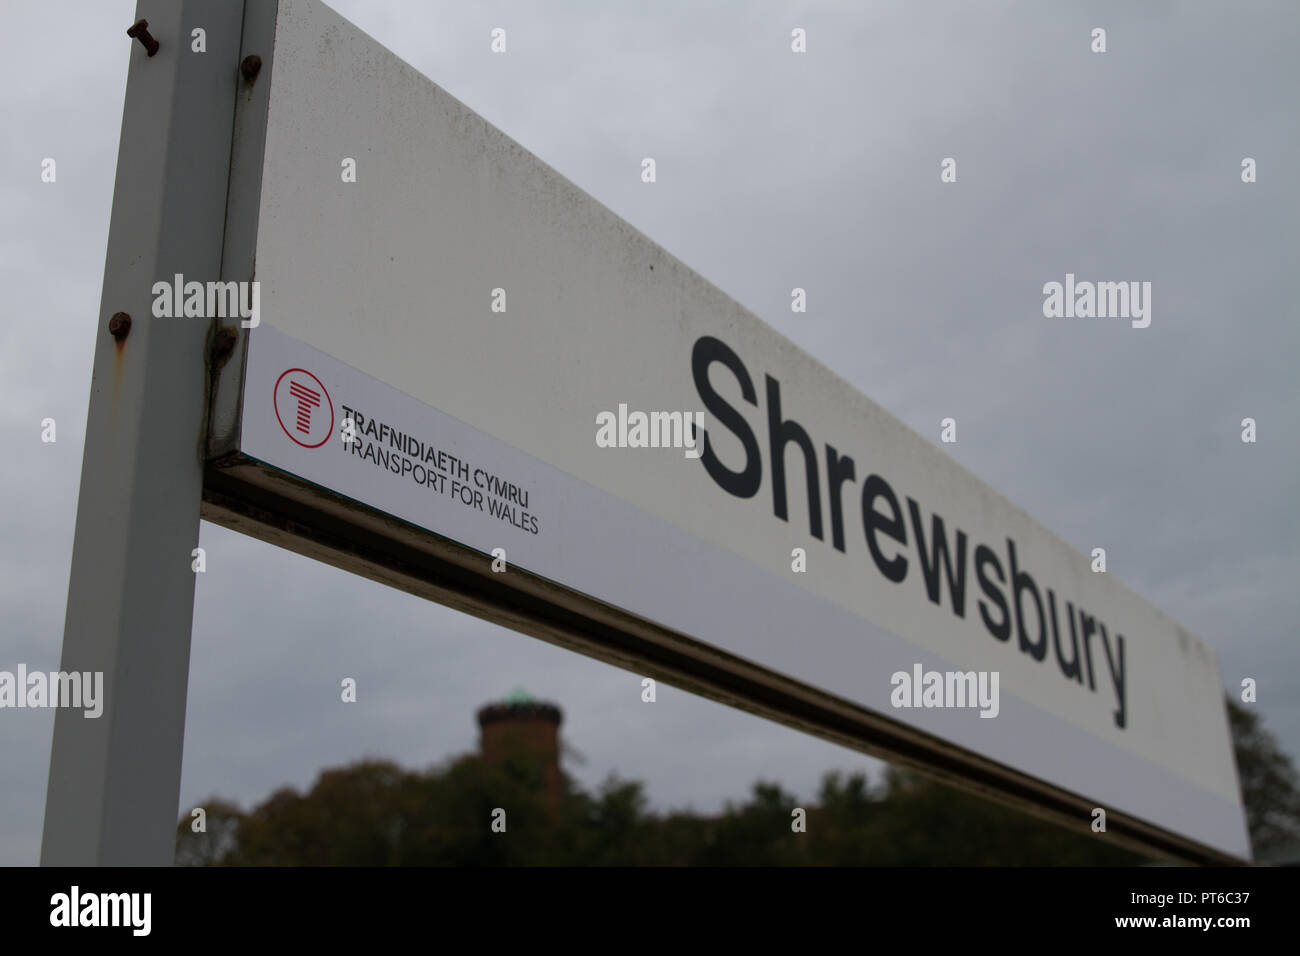 Bahnhof Shrewsbury in England Zeichen gegen einen grauen Himmel Übersicht Transport für Wales Marke durch die neue Bahn Fahrer Keolis Amey. Stockfoto